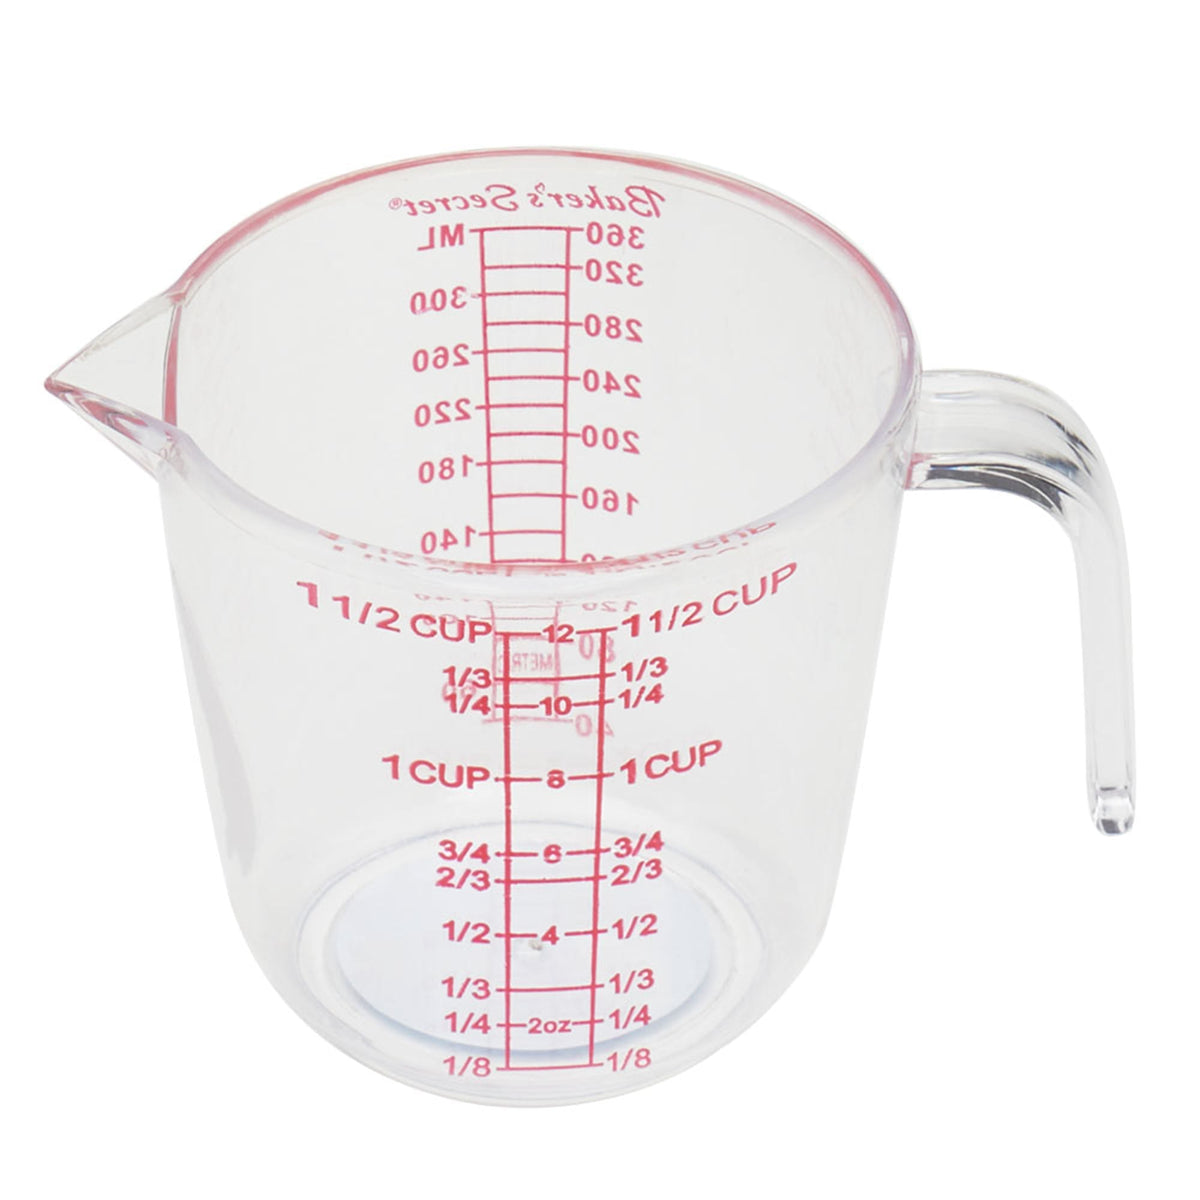 48 Wholesale Bakergcos Secret 1.5 Oz Mini Measuring Cup - at 